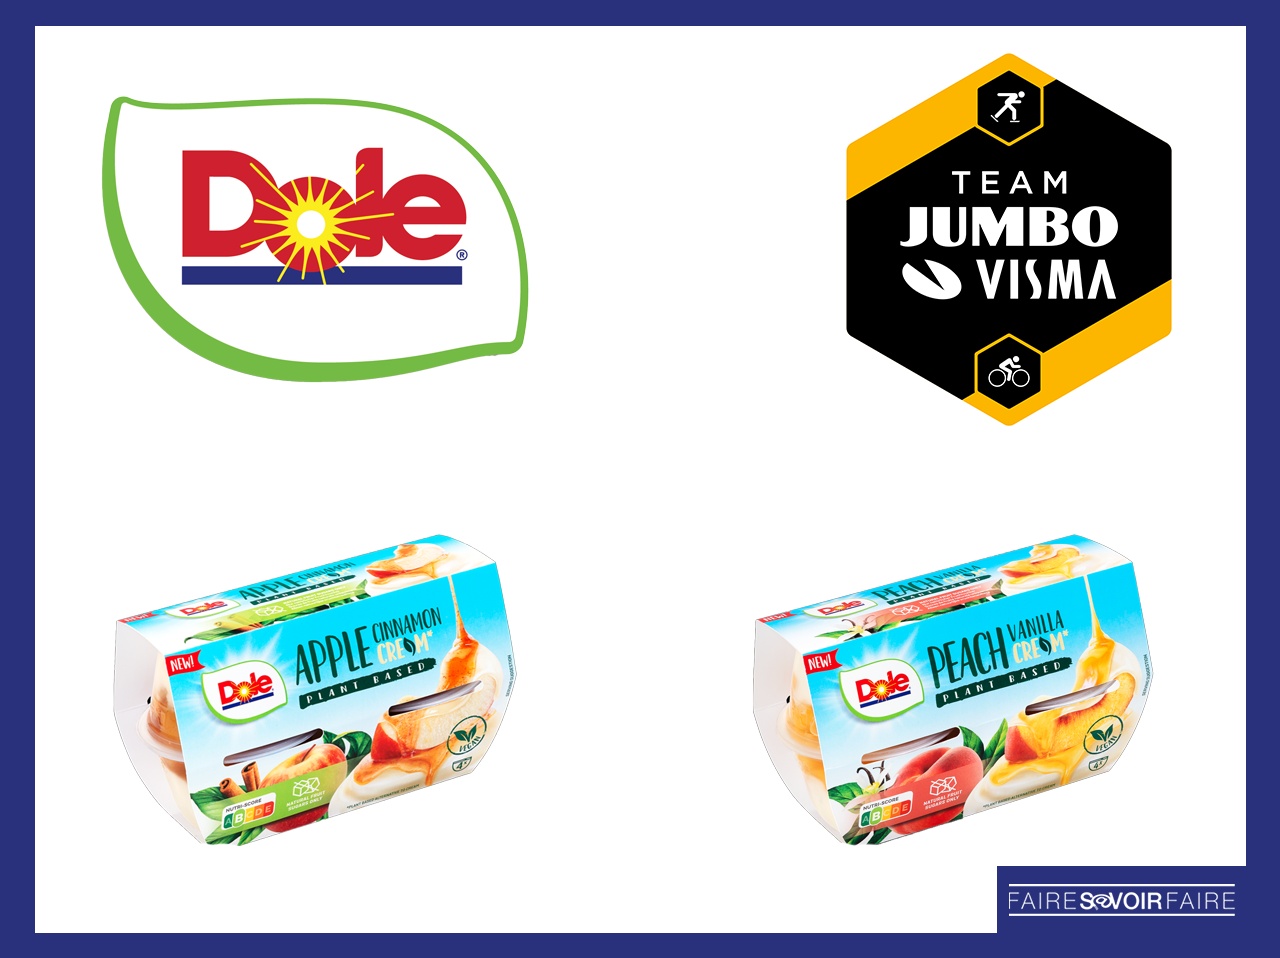 Dole Packaged Foods lance “Fruit & Cre*m Végétale” et s’allie à une équipe sportive